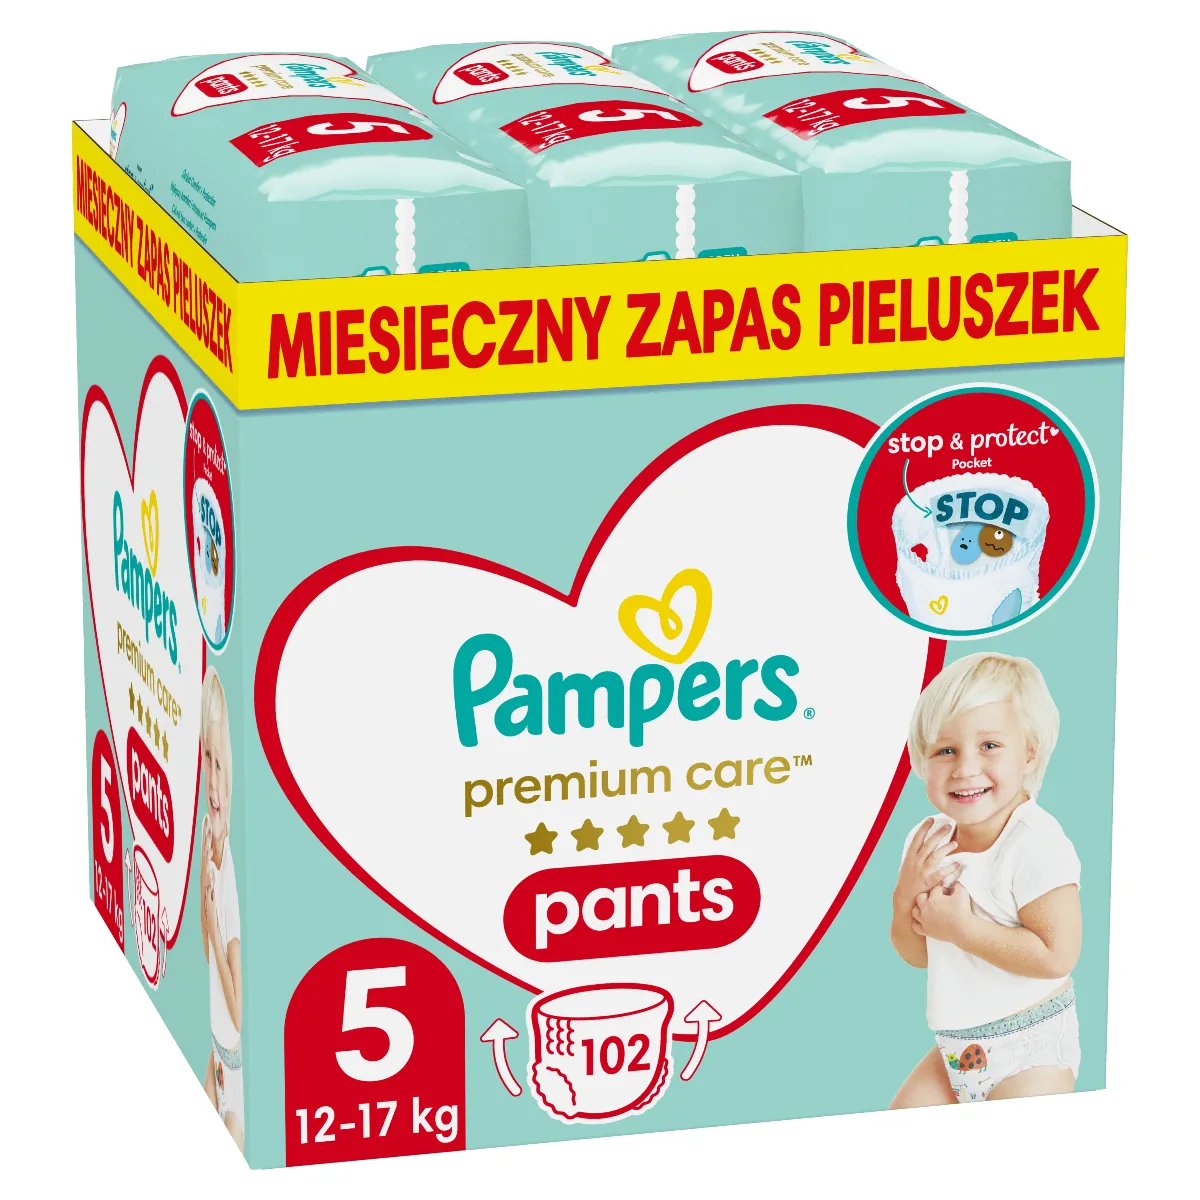 Pampers Premium Care Pants Junior pieluszki jednorazowe rozmiar 5, 12-17 kg, 102 szt.